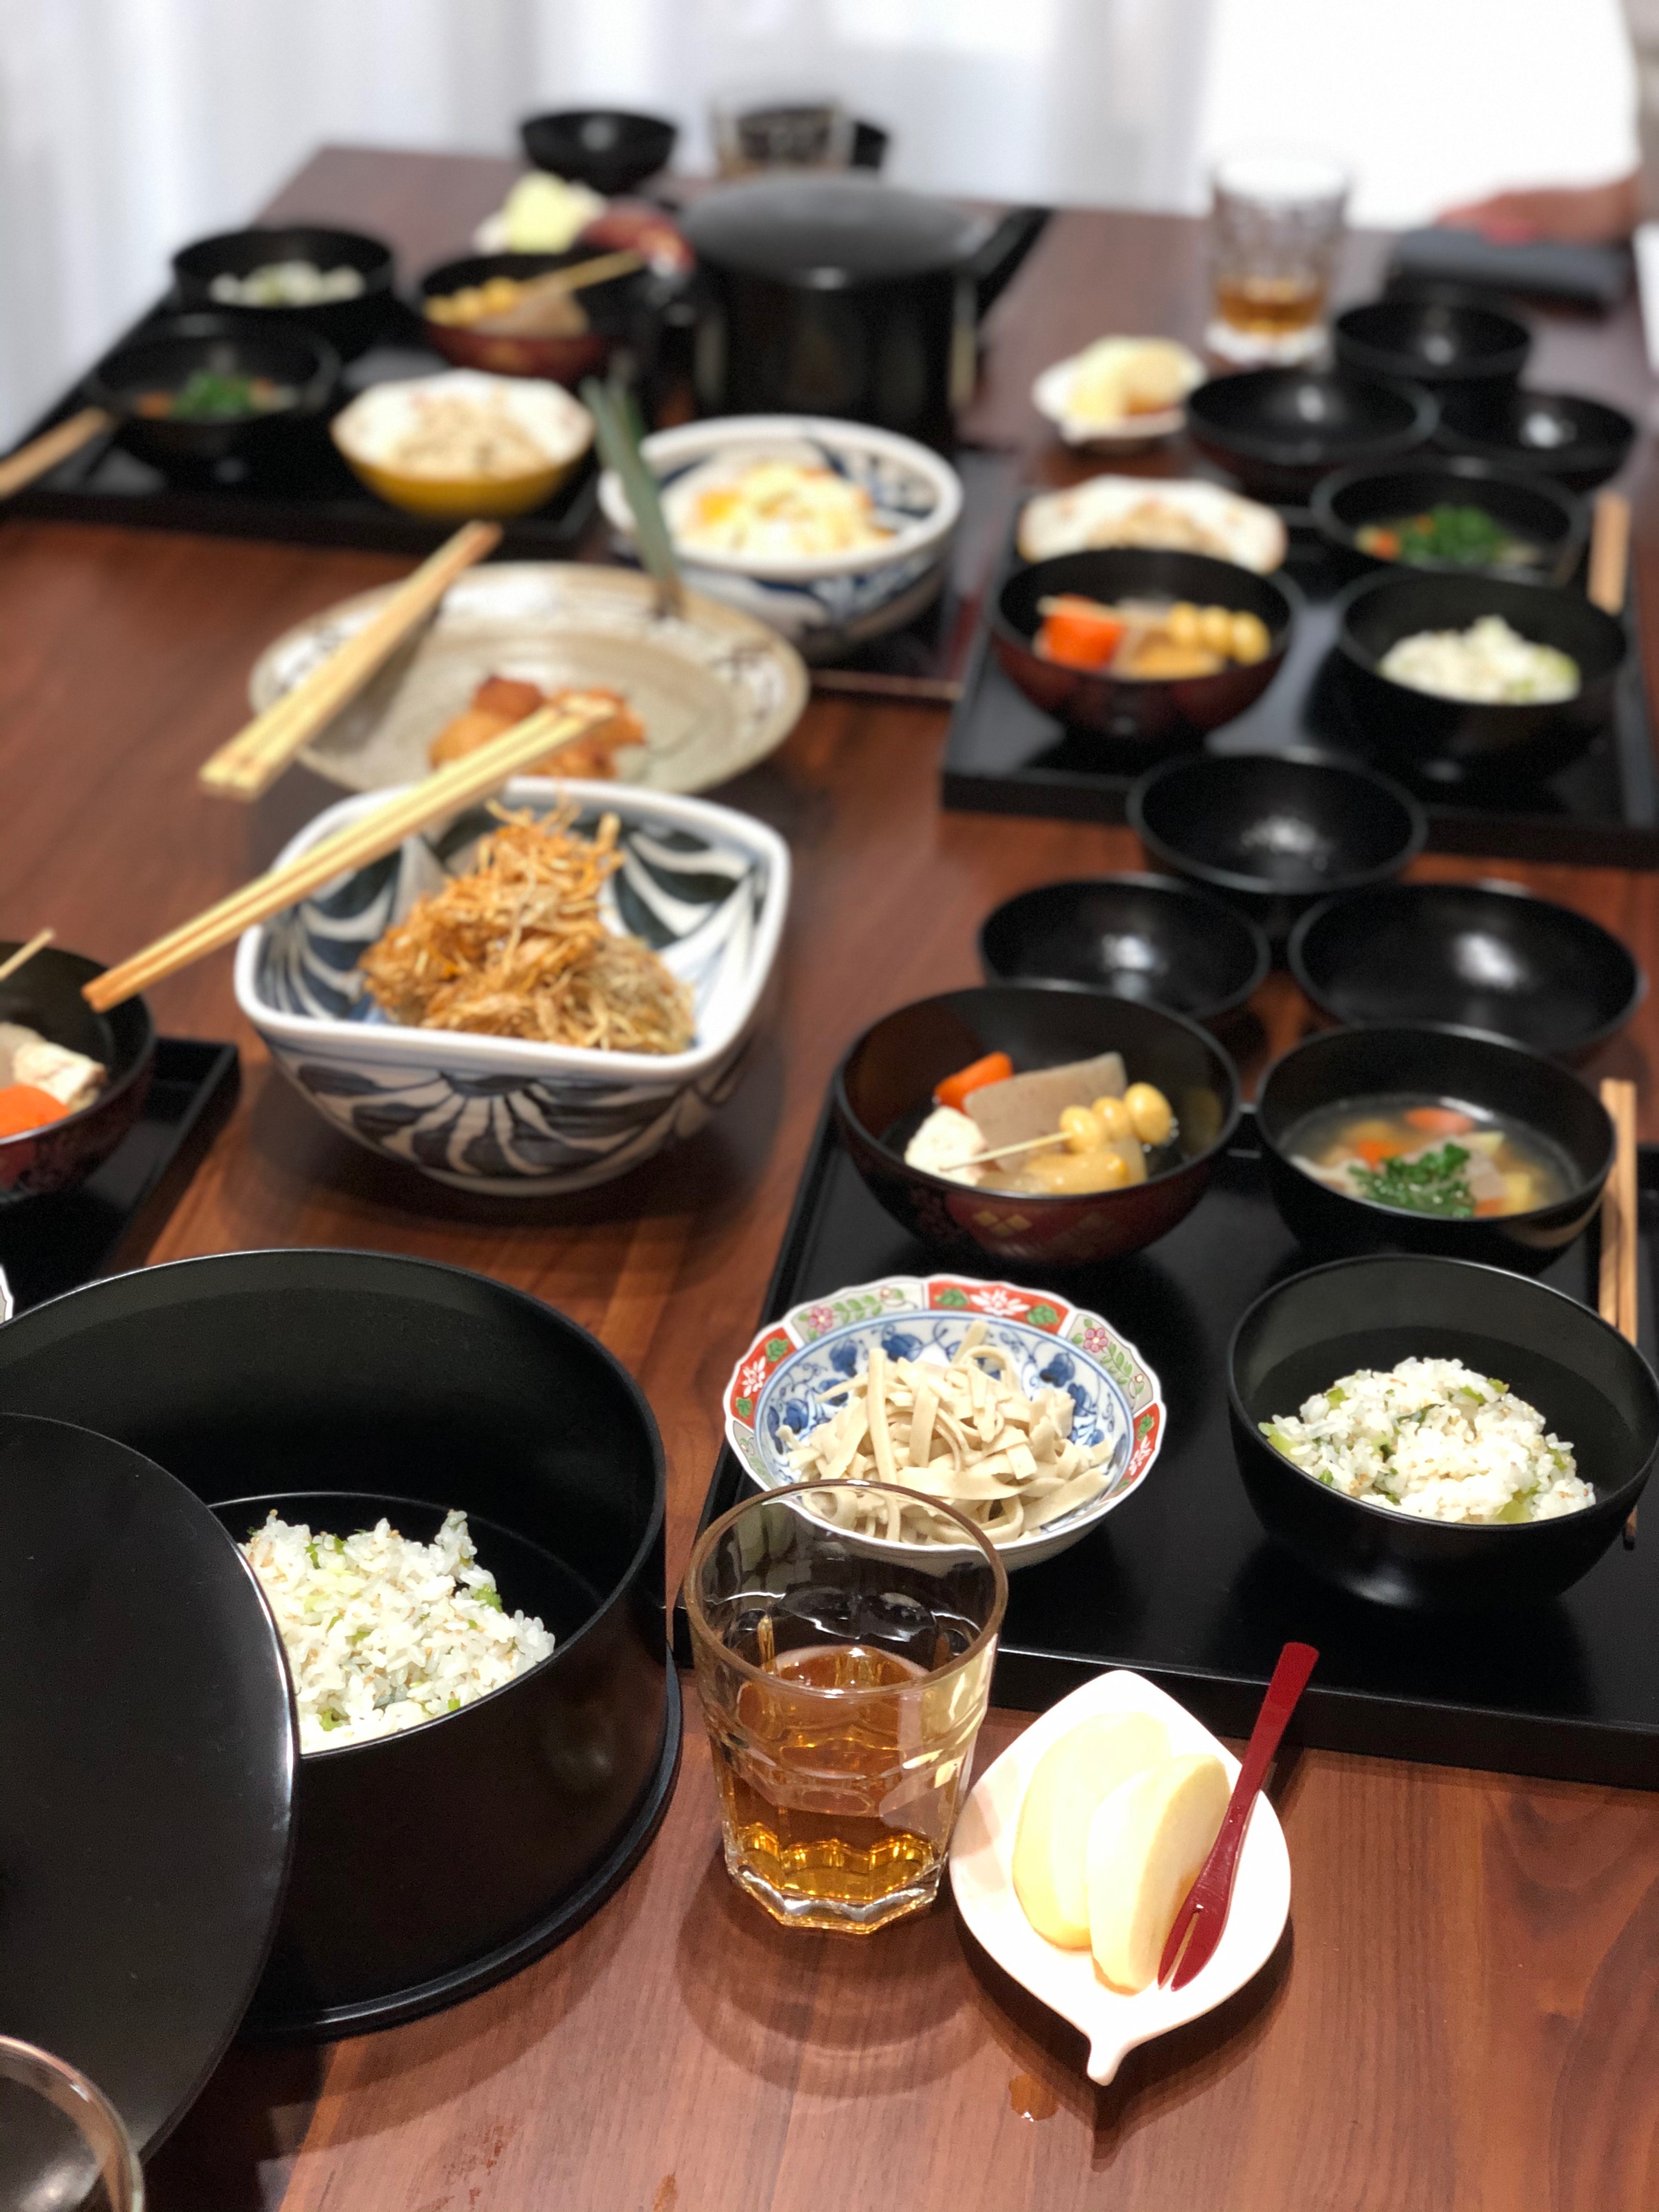 (和ごはん・食育研究会)-活動報告-2019年12月「茶懐石精進料理教室」を開催しました